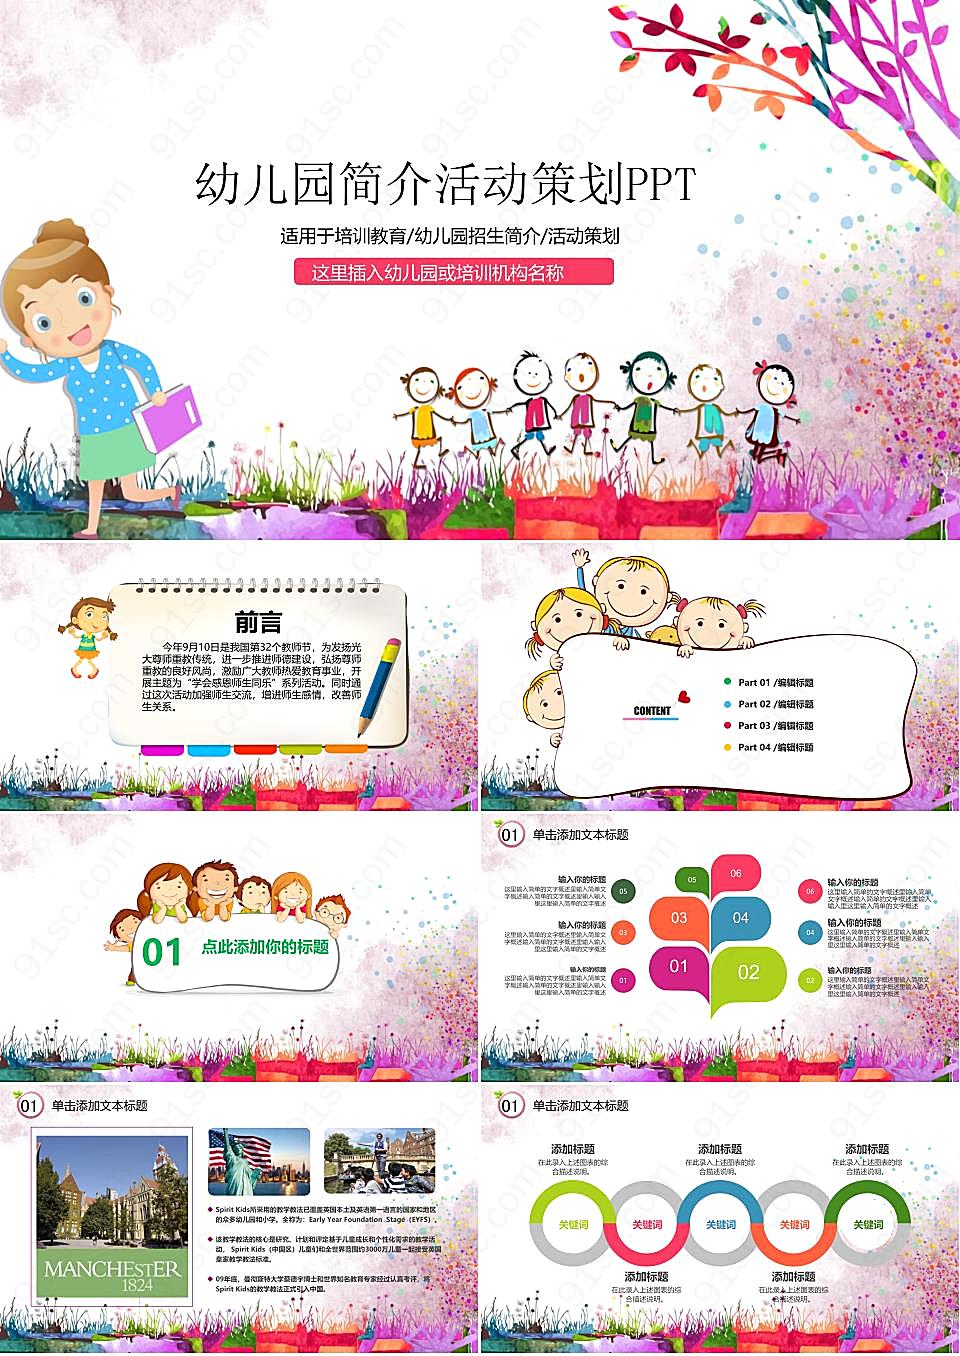 教育水彩涂鸦风格的幼儿园活动策划PPT模板